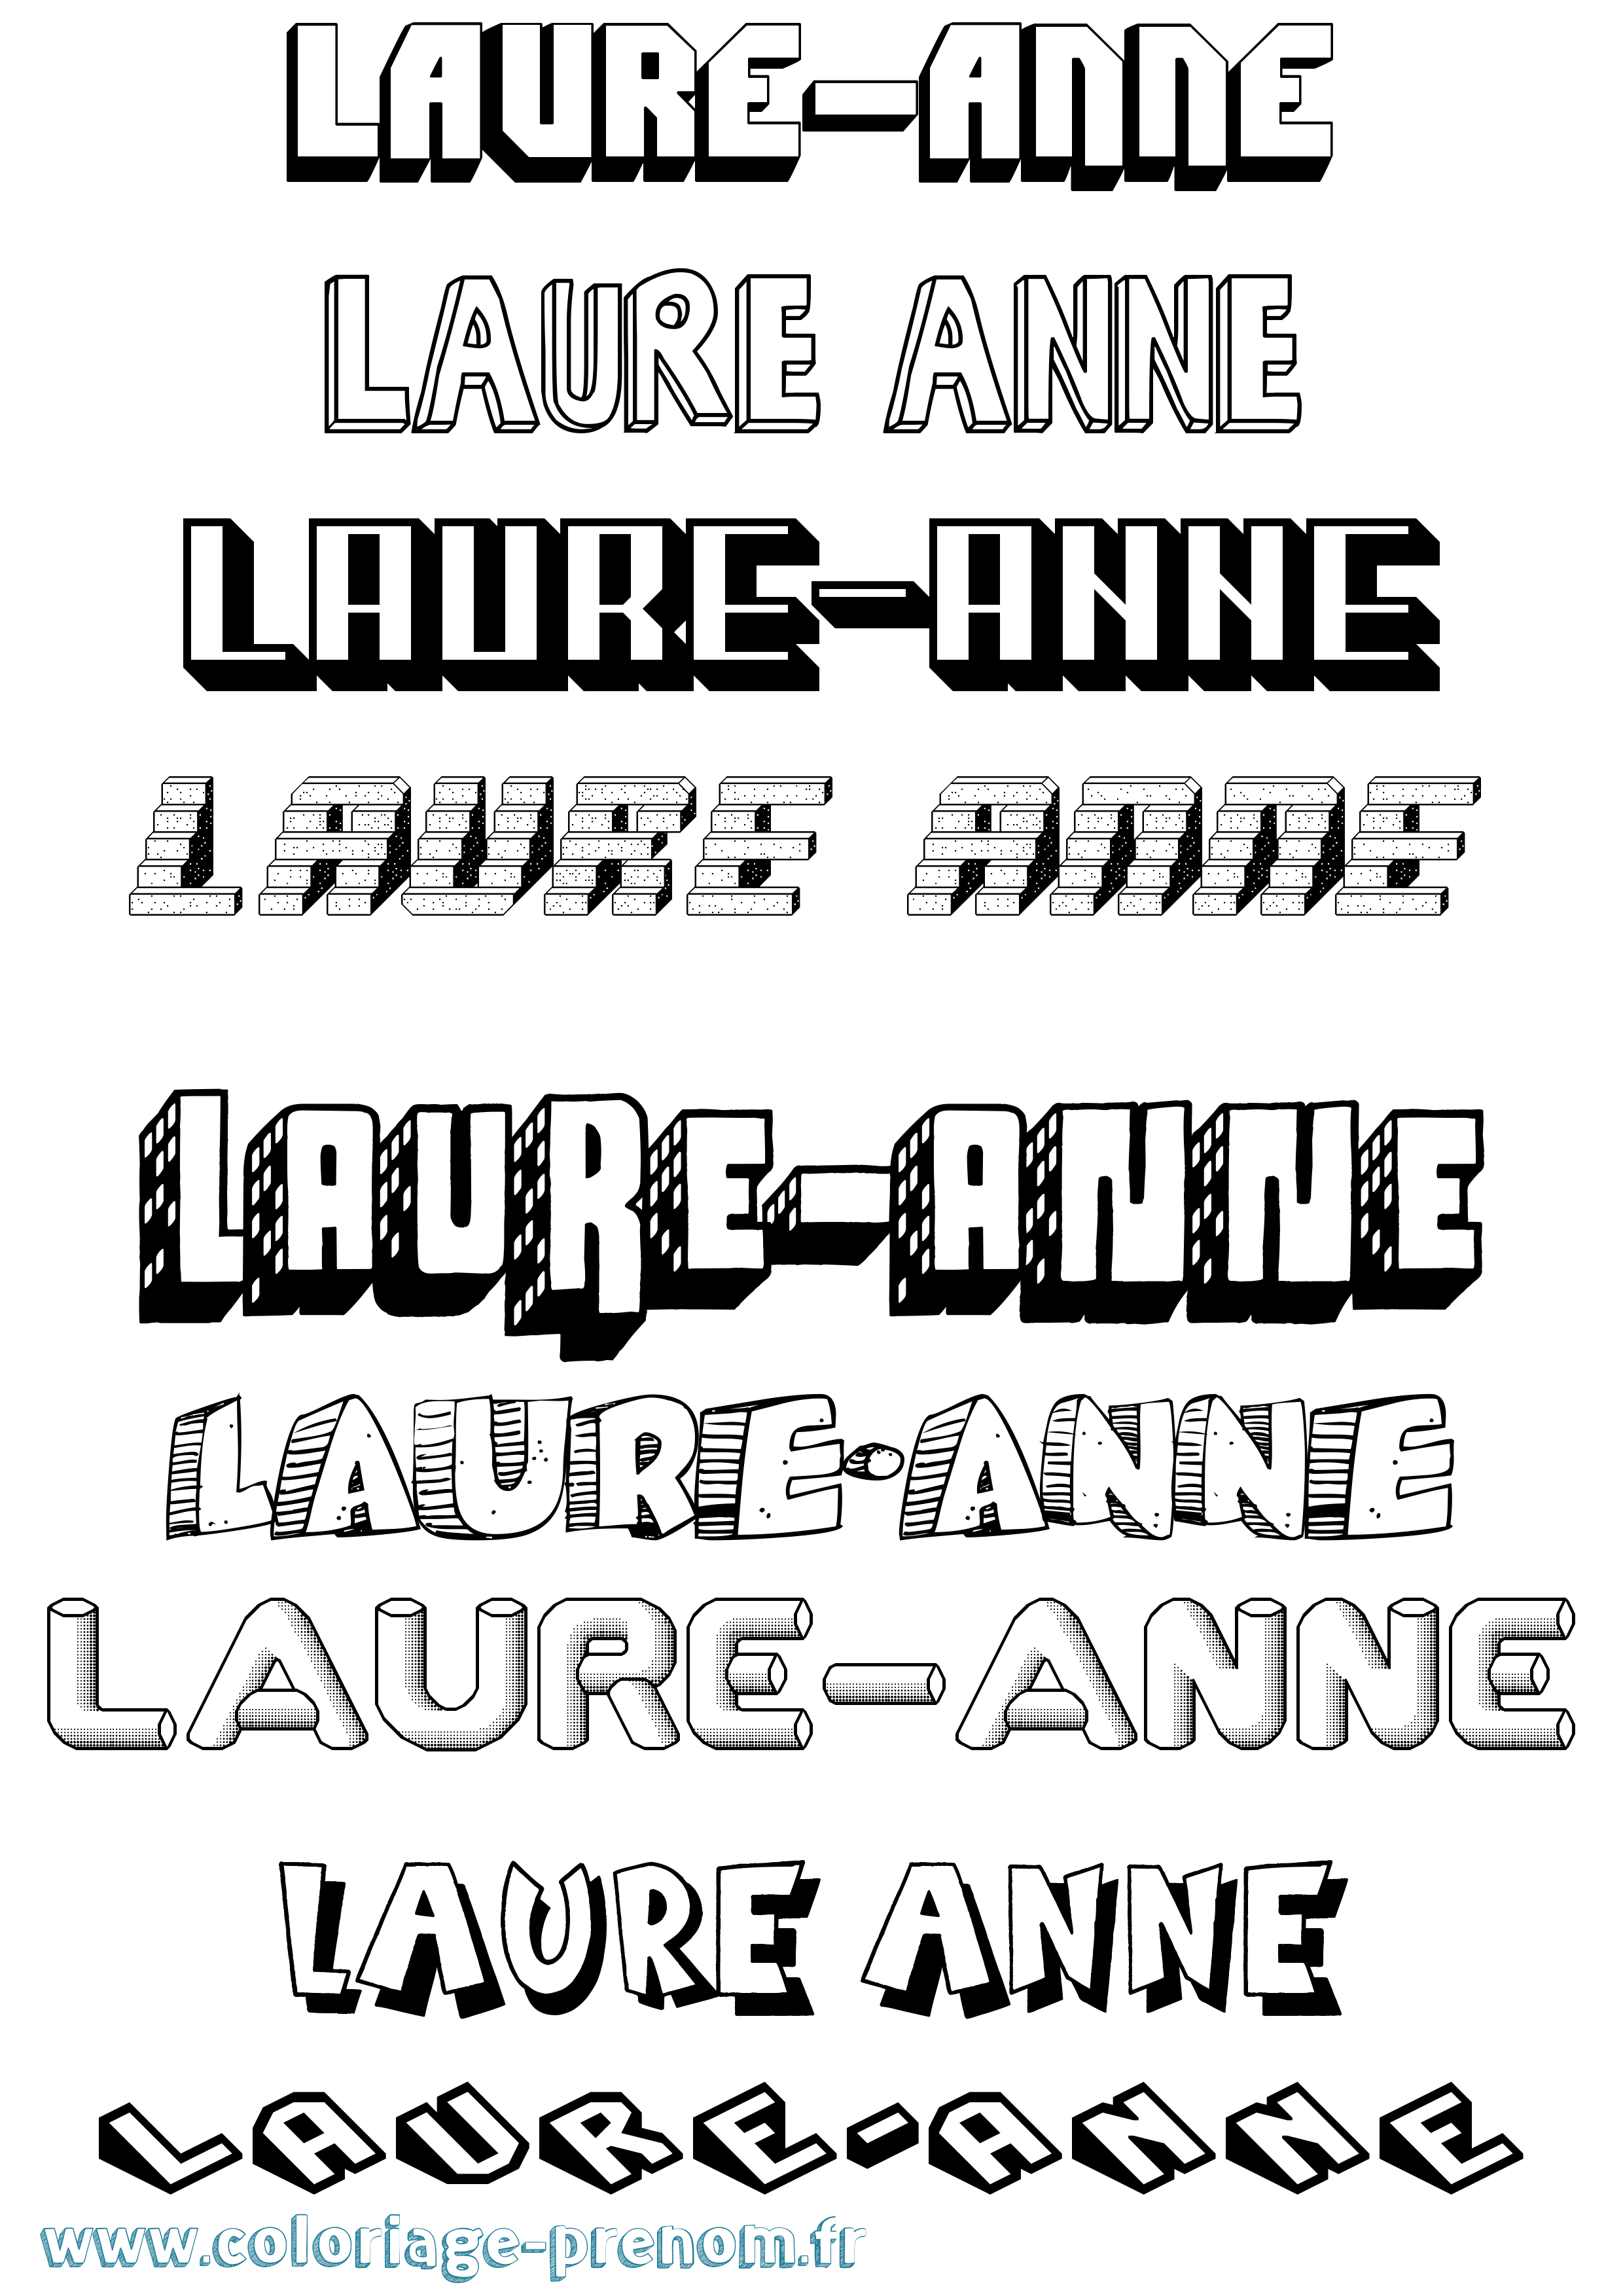 Coloriage prénom Laure-Anne Effet 3D